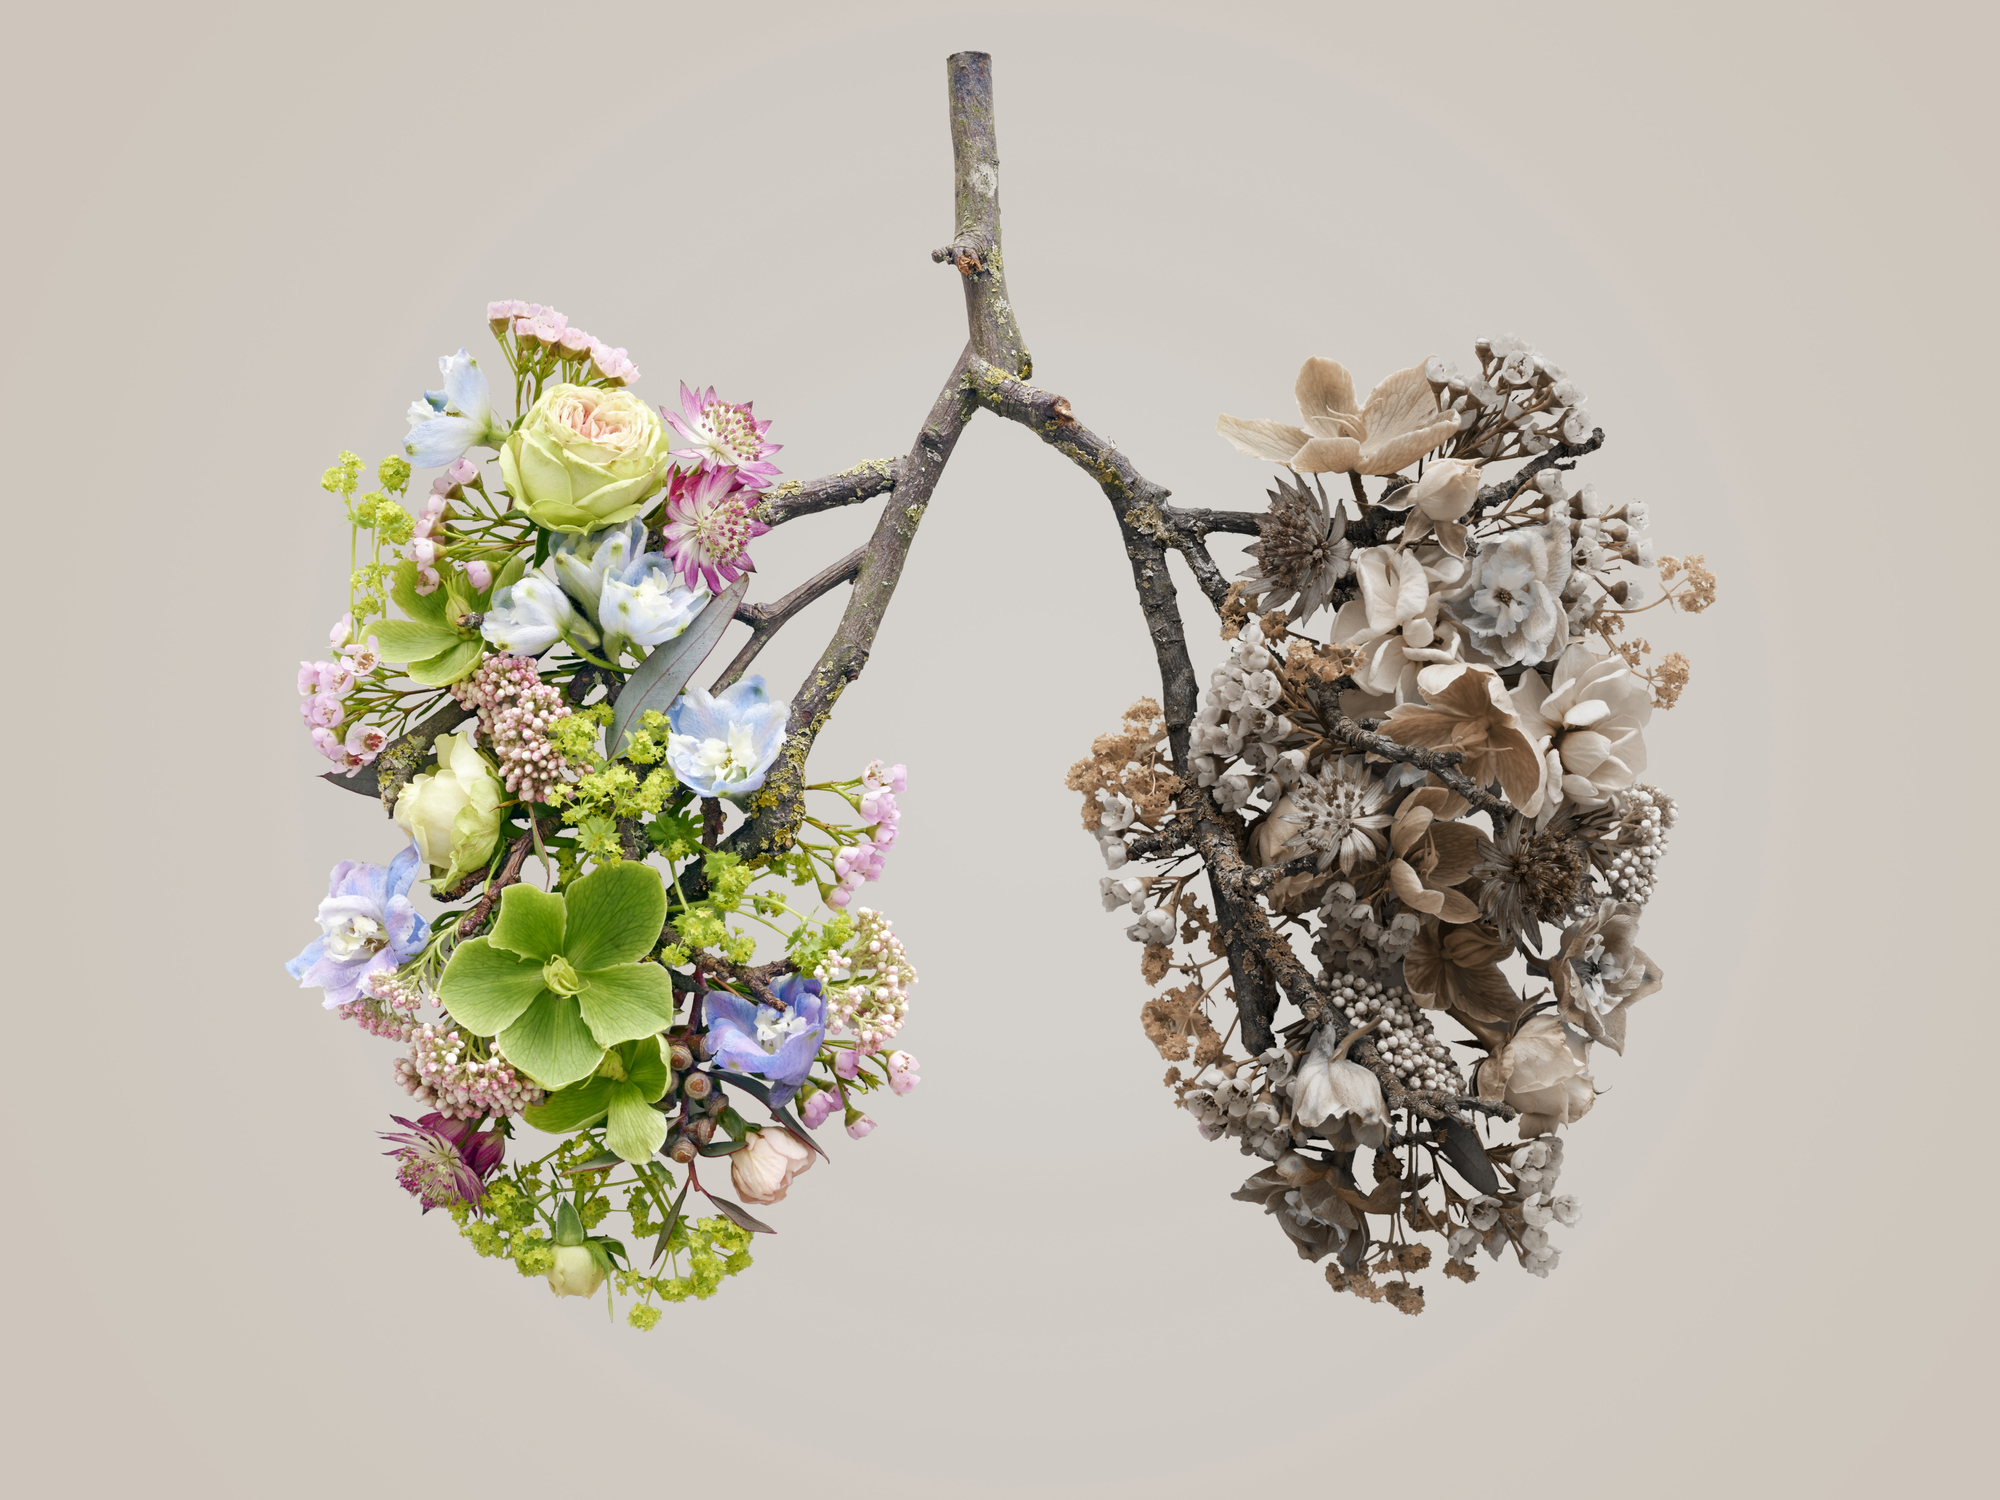 Flores de primavera que representan pulmones humanos, toma conceptual del estudio.